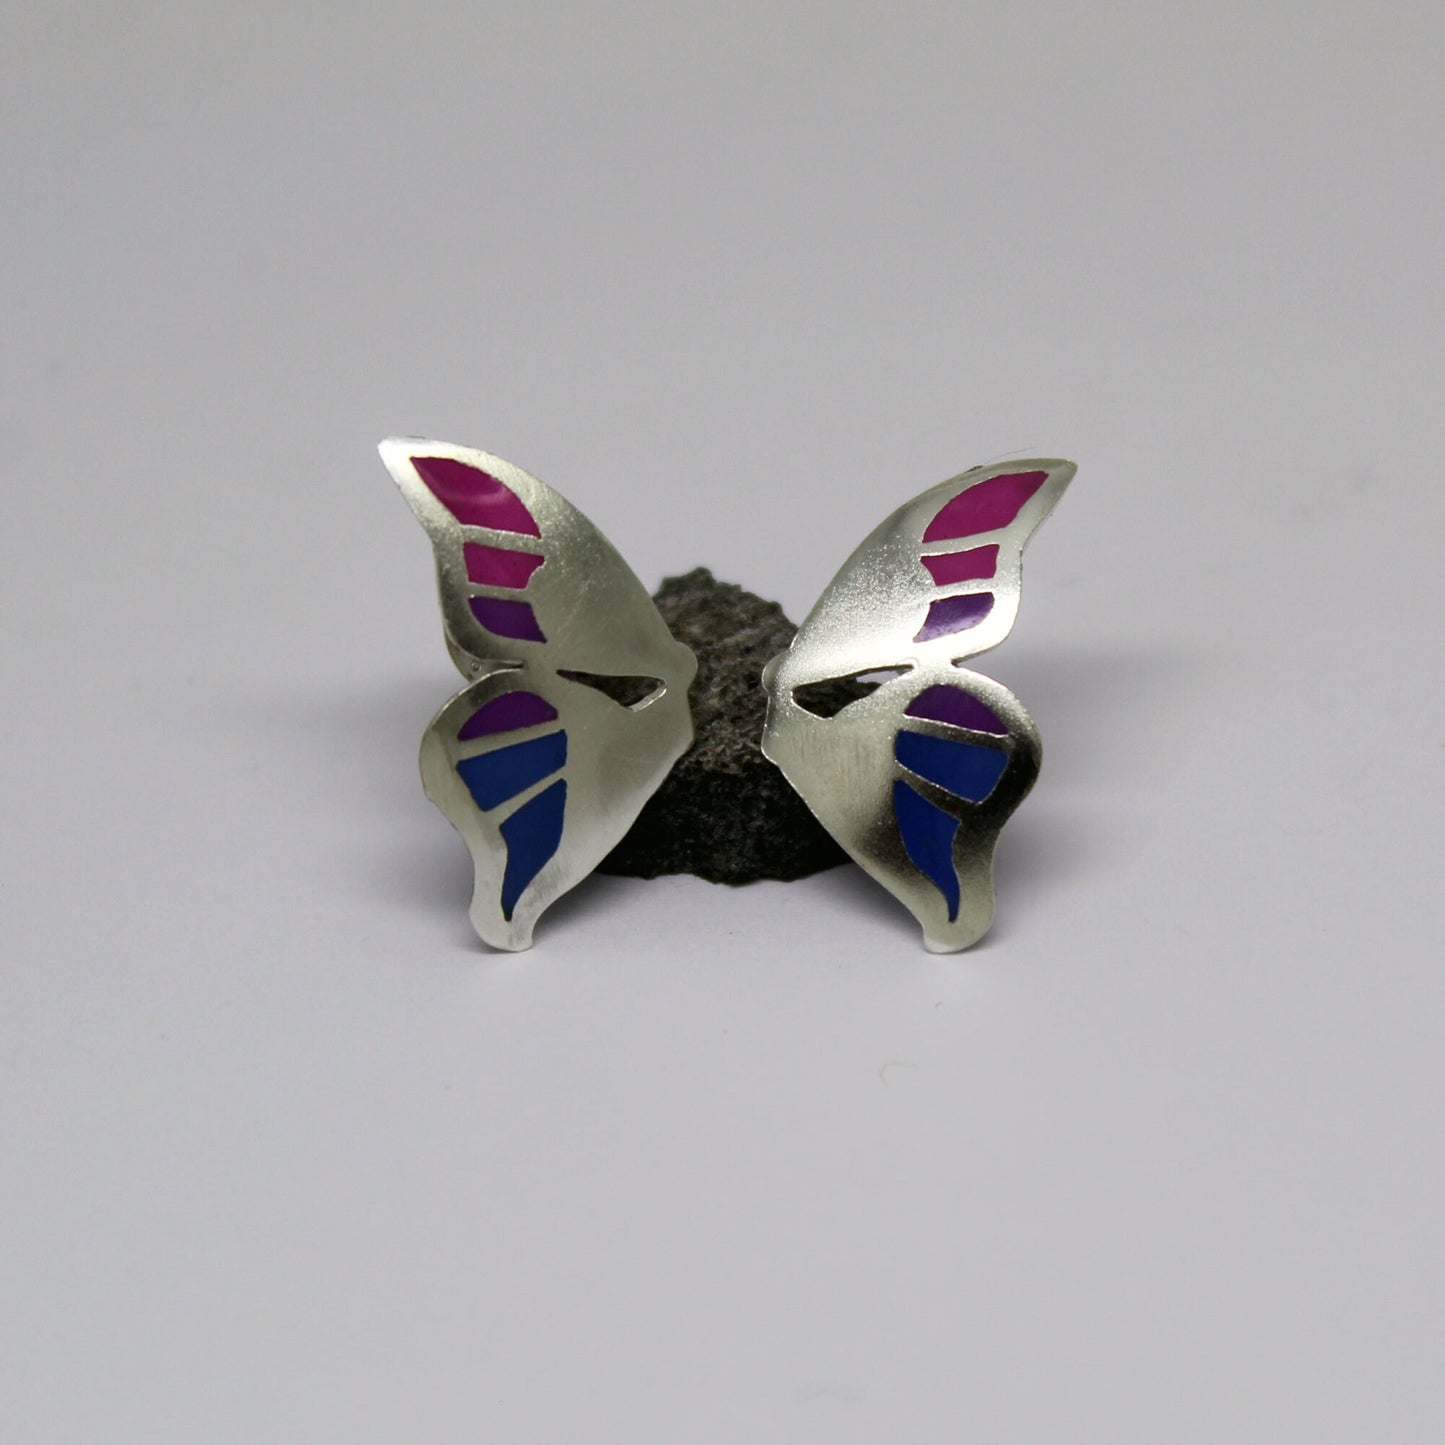 Purple and blue butterfly earrings in 925 silver